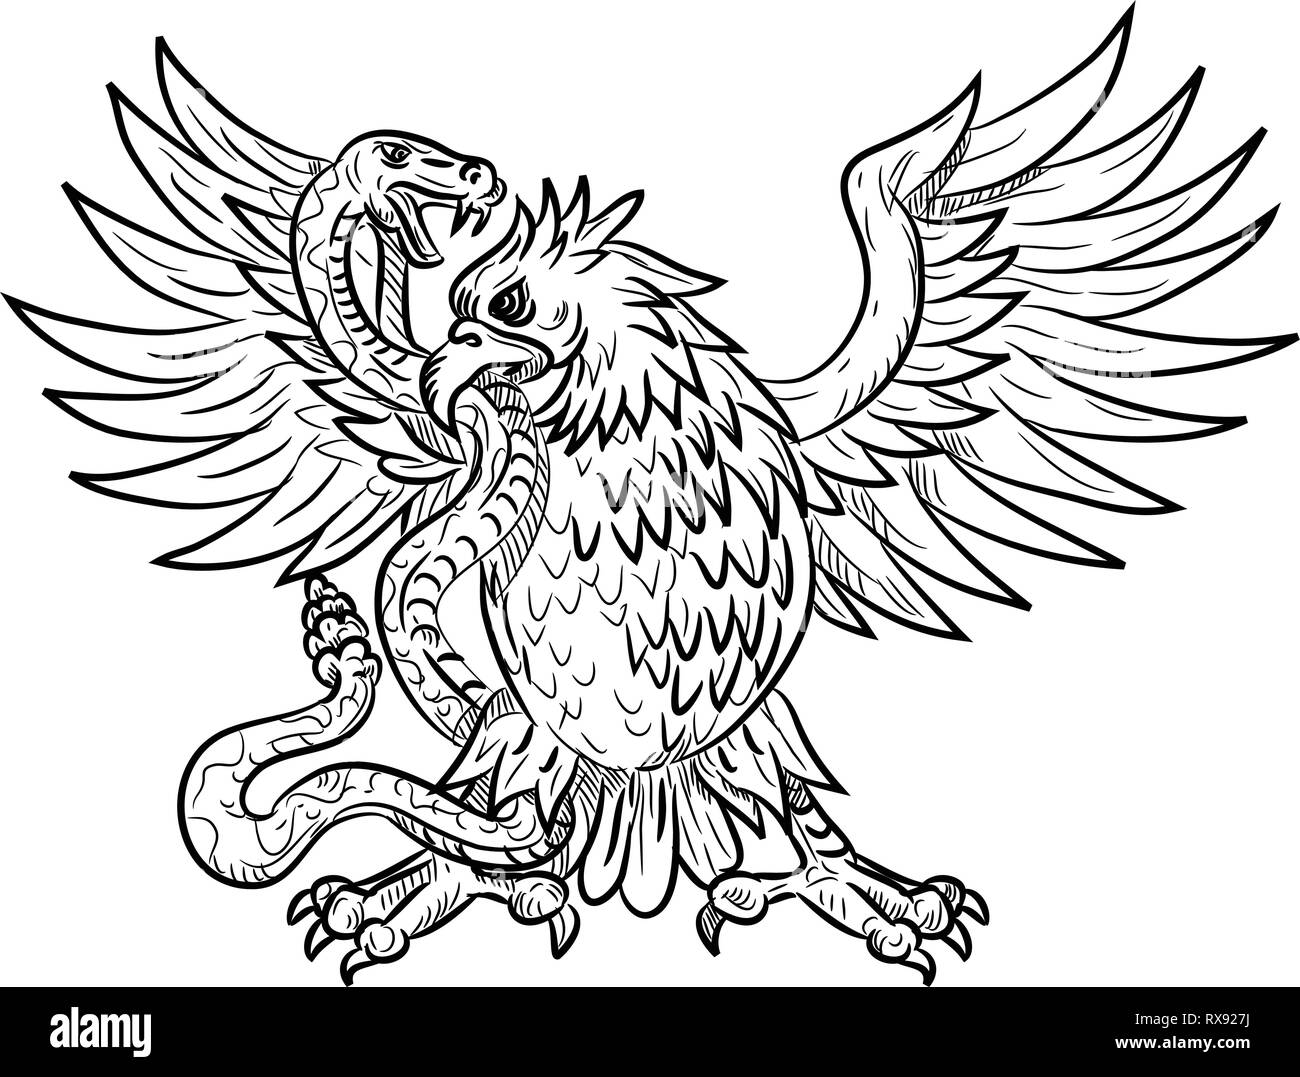 Dibujo Dibujo Ilustración estilo mexicano de un águila, el águila real o el  norte crested caracara luchando contra una serpiente de cascabel, víbora,  serpiente o serpiente en bla Imagen Vector de stock -